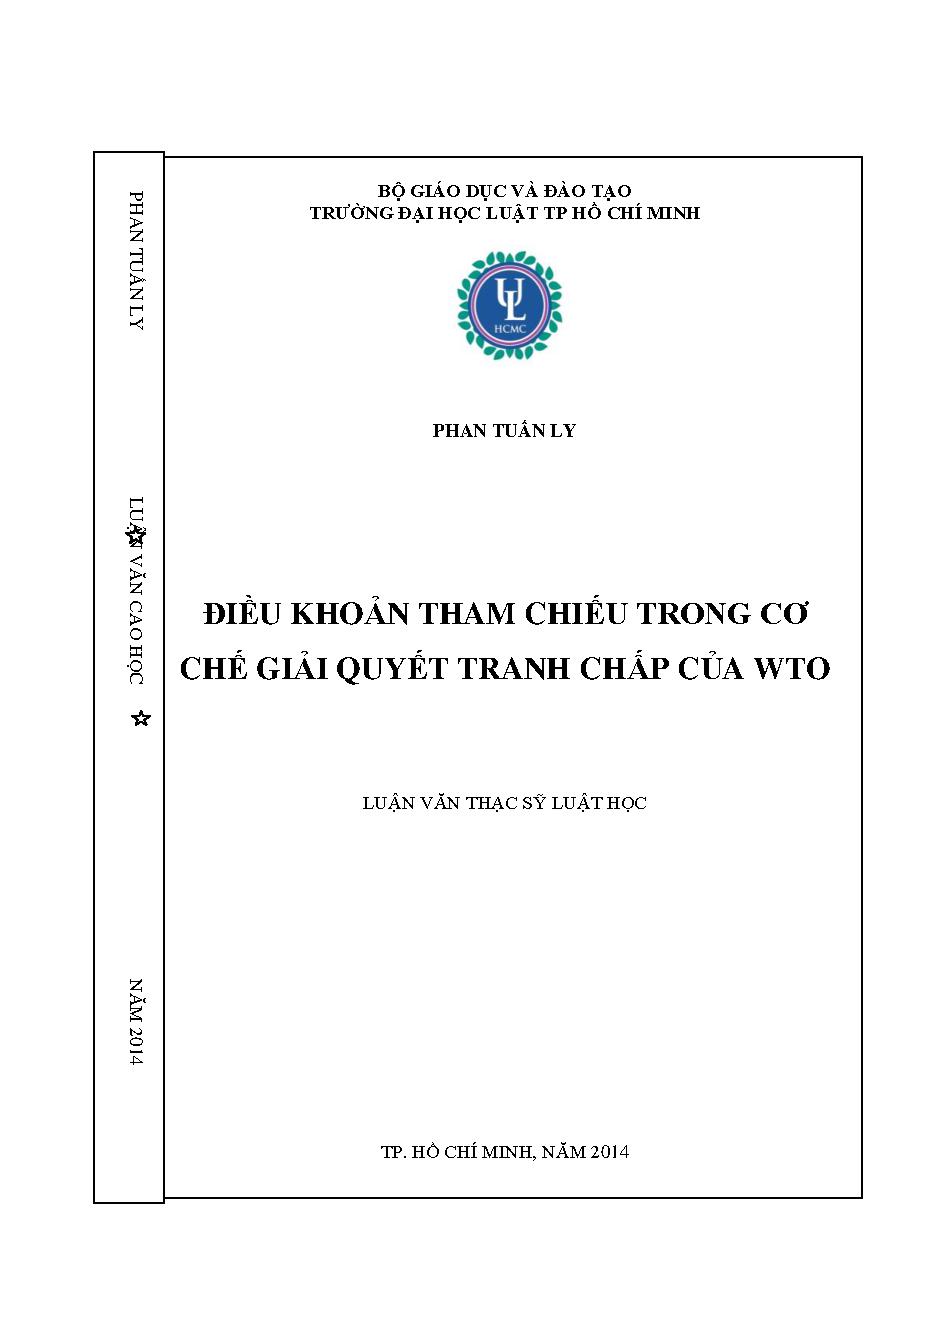 Điều khoản tham chiếu trong cơ chế giải quyết tranh chấp của WTO